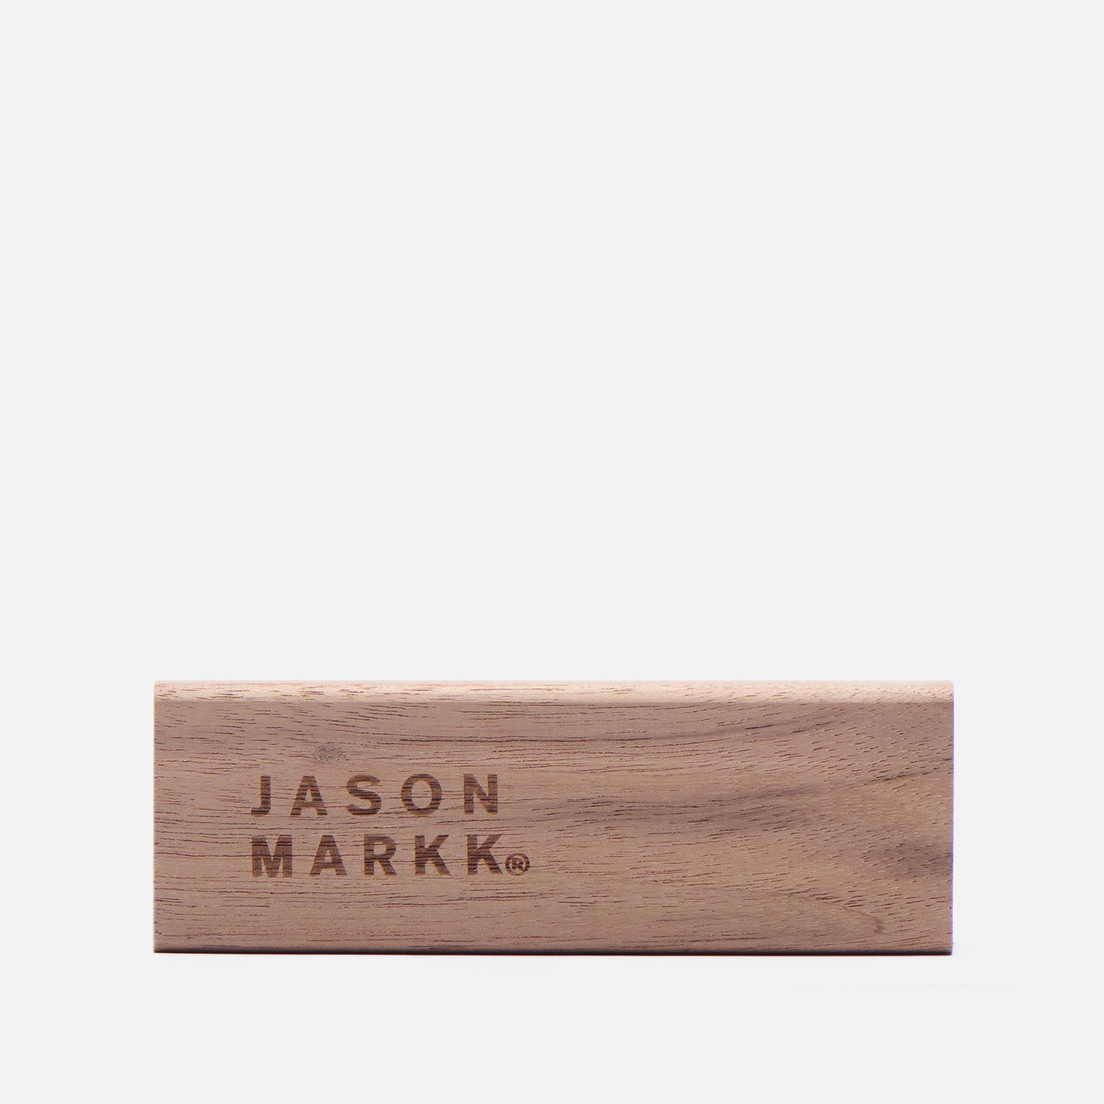 Jason Markk Щетка для обуви Premium Cleaning Brush